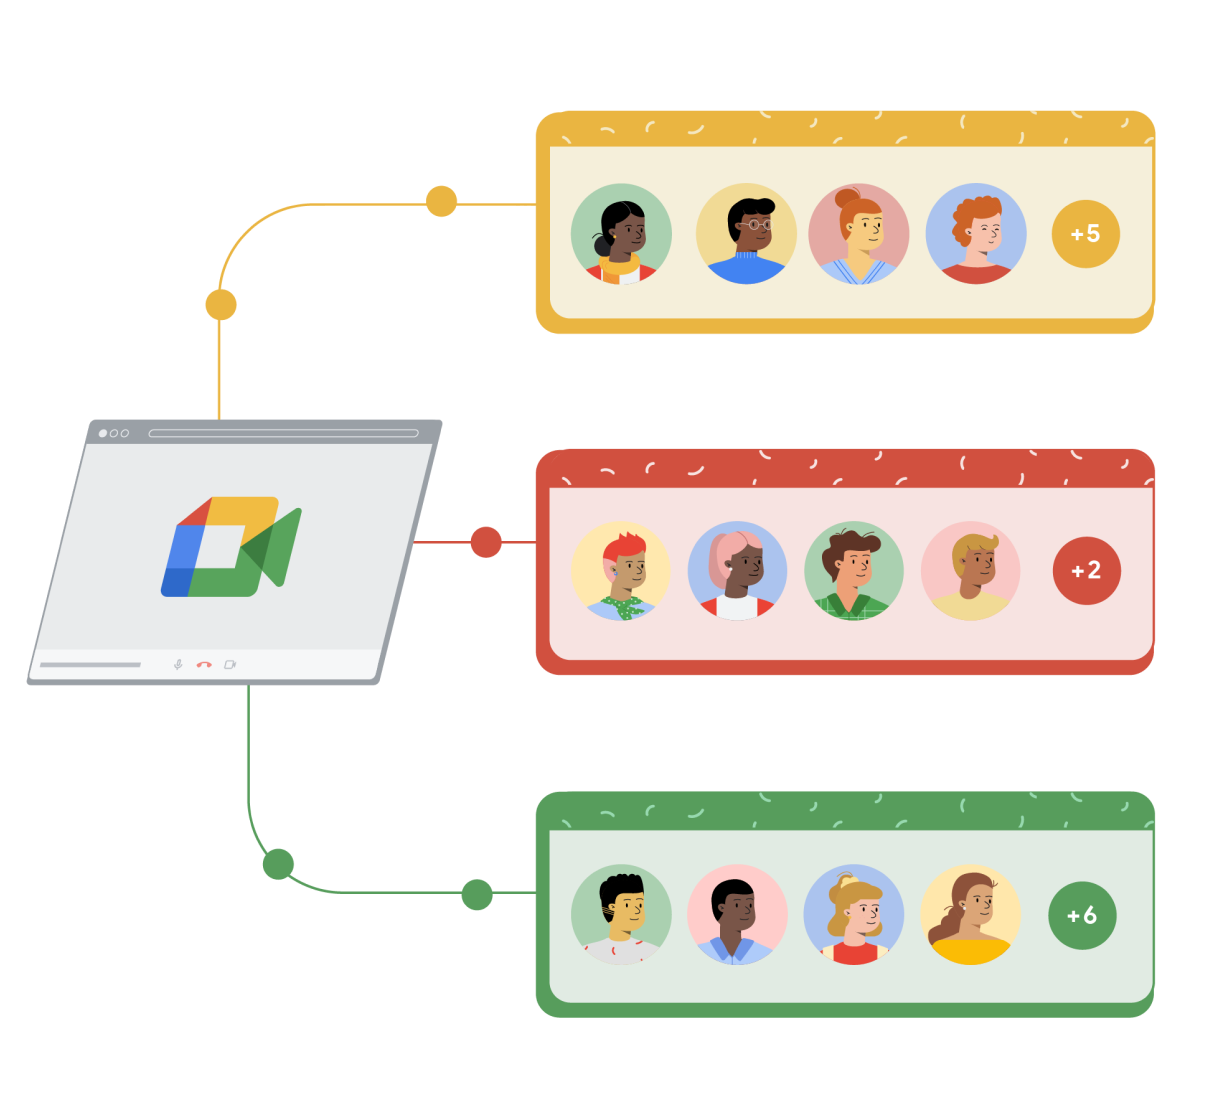 หน้าต่างเบราว์เซอร์ของ Google Meet ลิงก์กับสี่เหลี่ยมผืนผ้า 3 อันที่เป็นสีเหลือง สีแดง และสีเขียว โดยแต่ละอันมีตัวการ์ตูนรูปคน 4 คนในวงกลม และวงกลมที่ 5 ทางขวามีสัญลักษณ์และตัวเลขซึ่งสื่อถึงจำนวนผู้คนที่สามารถเข้าร่วมการประชุมผ่าน Google Meet ได้เพิ่มเติม